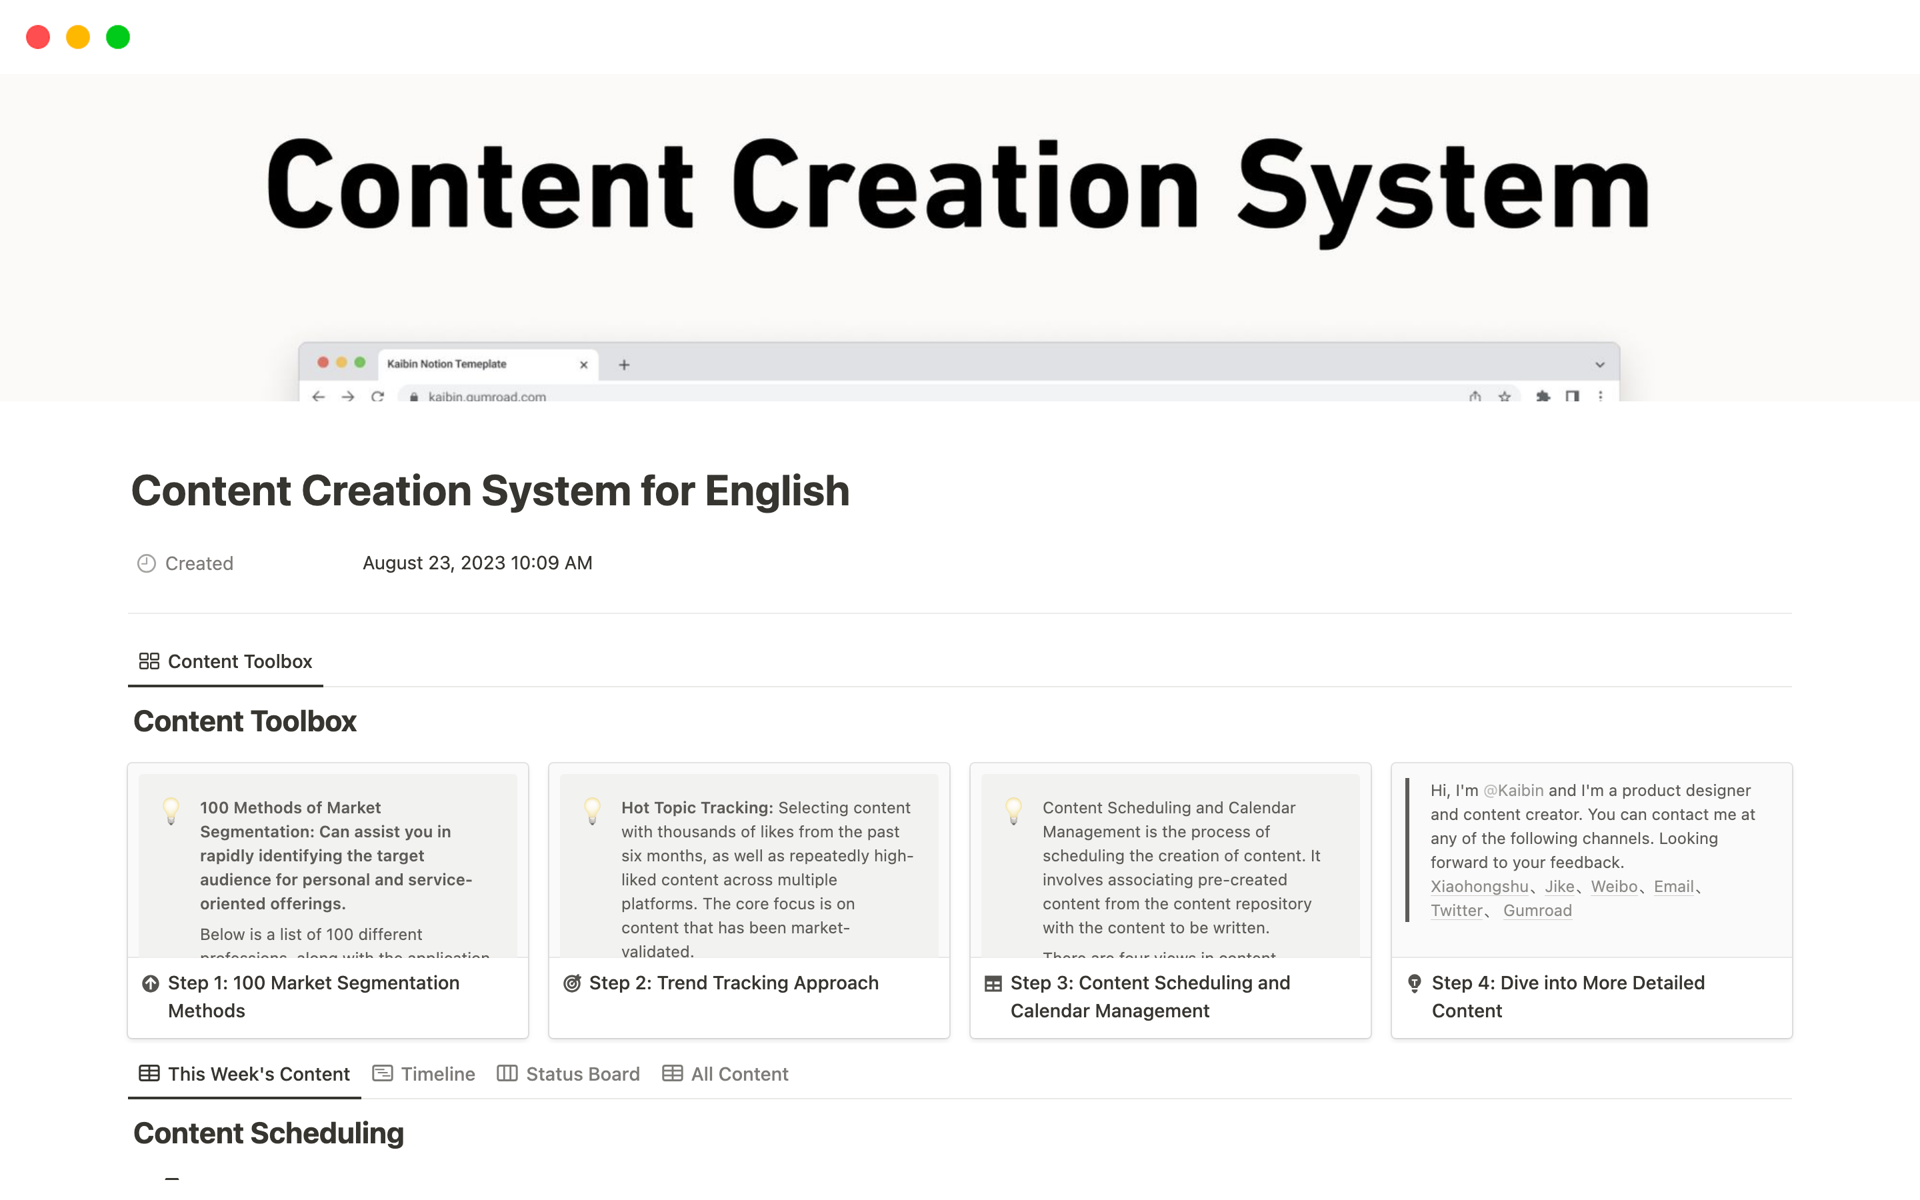 Uma prévia do modelo para Content Creation System for English